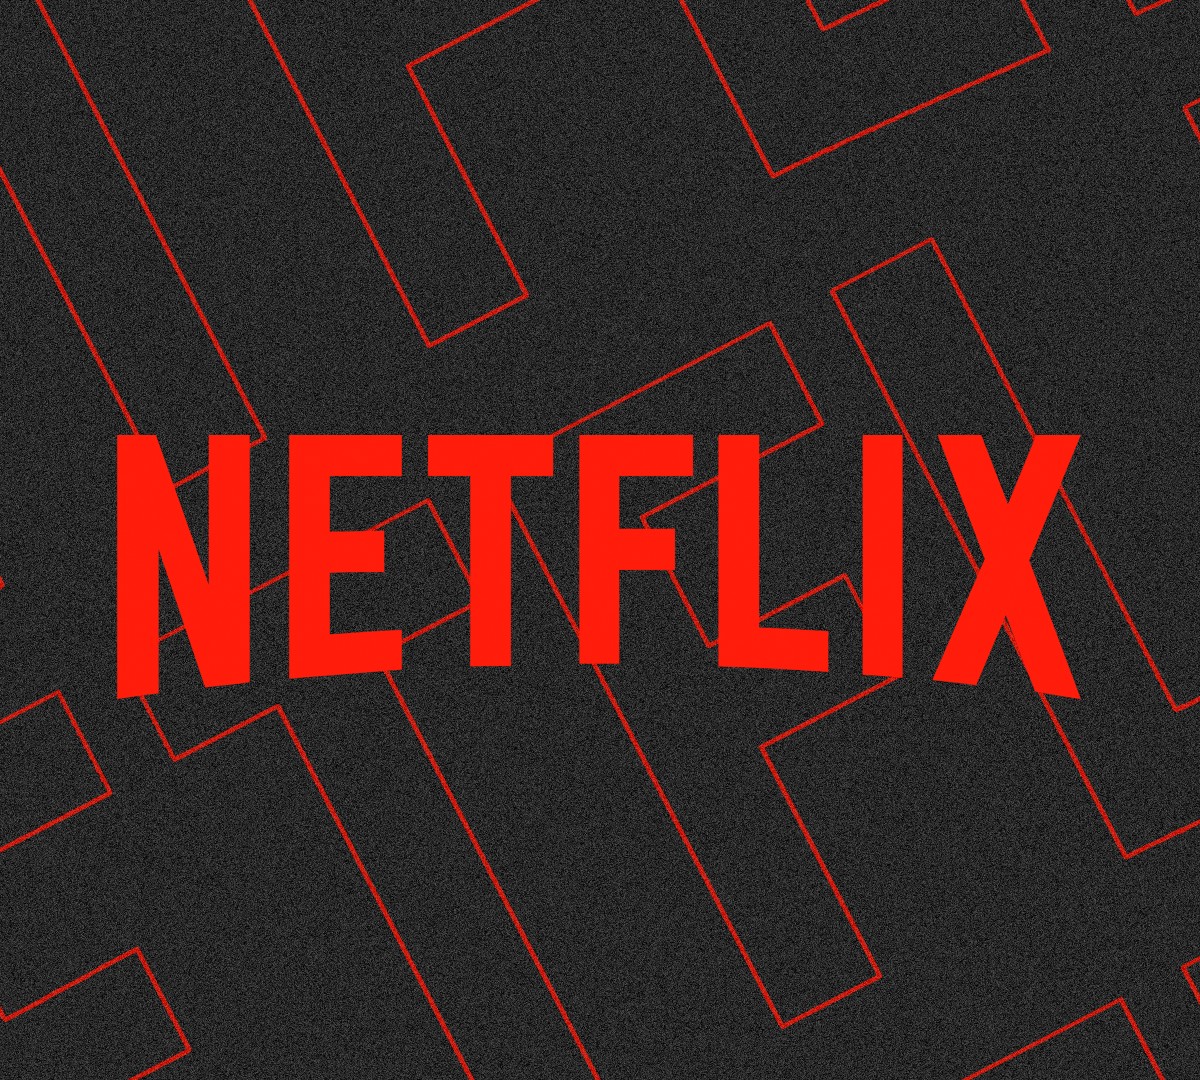 Como mudar o plano da Netflix 